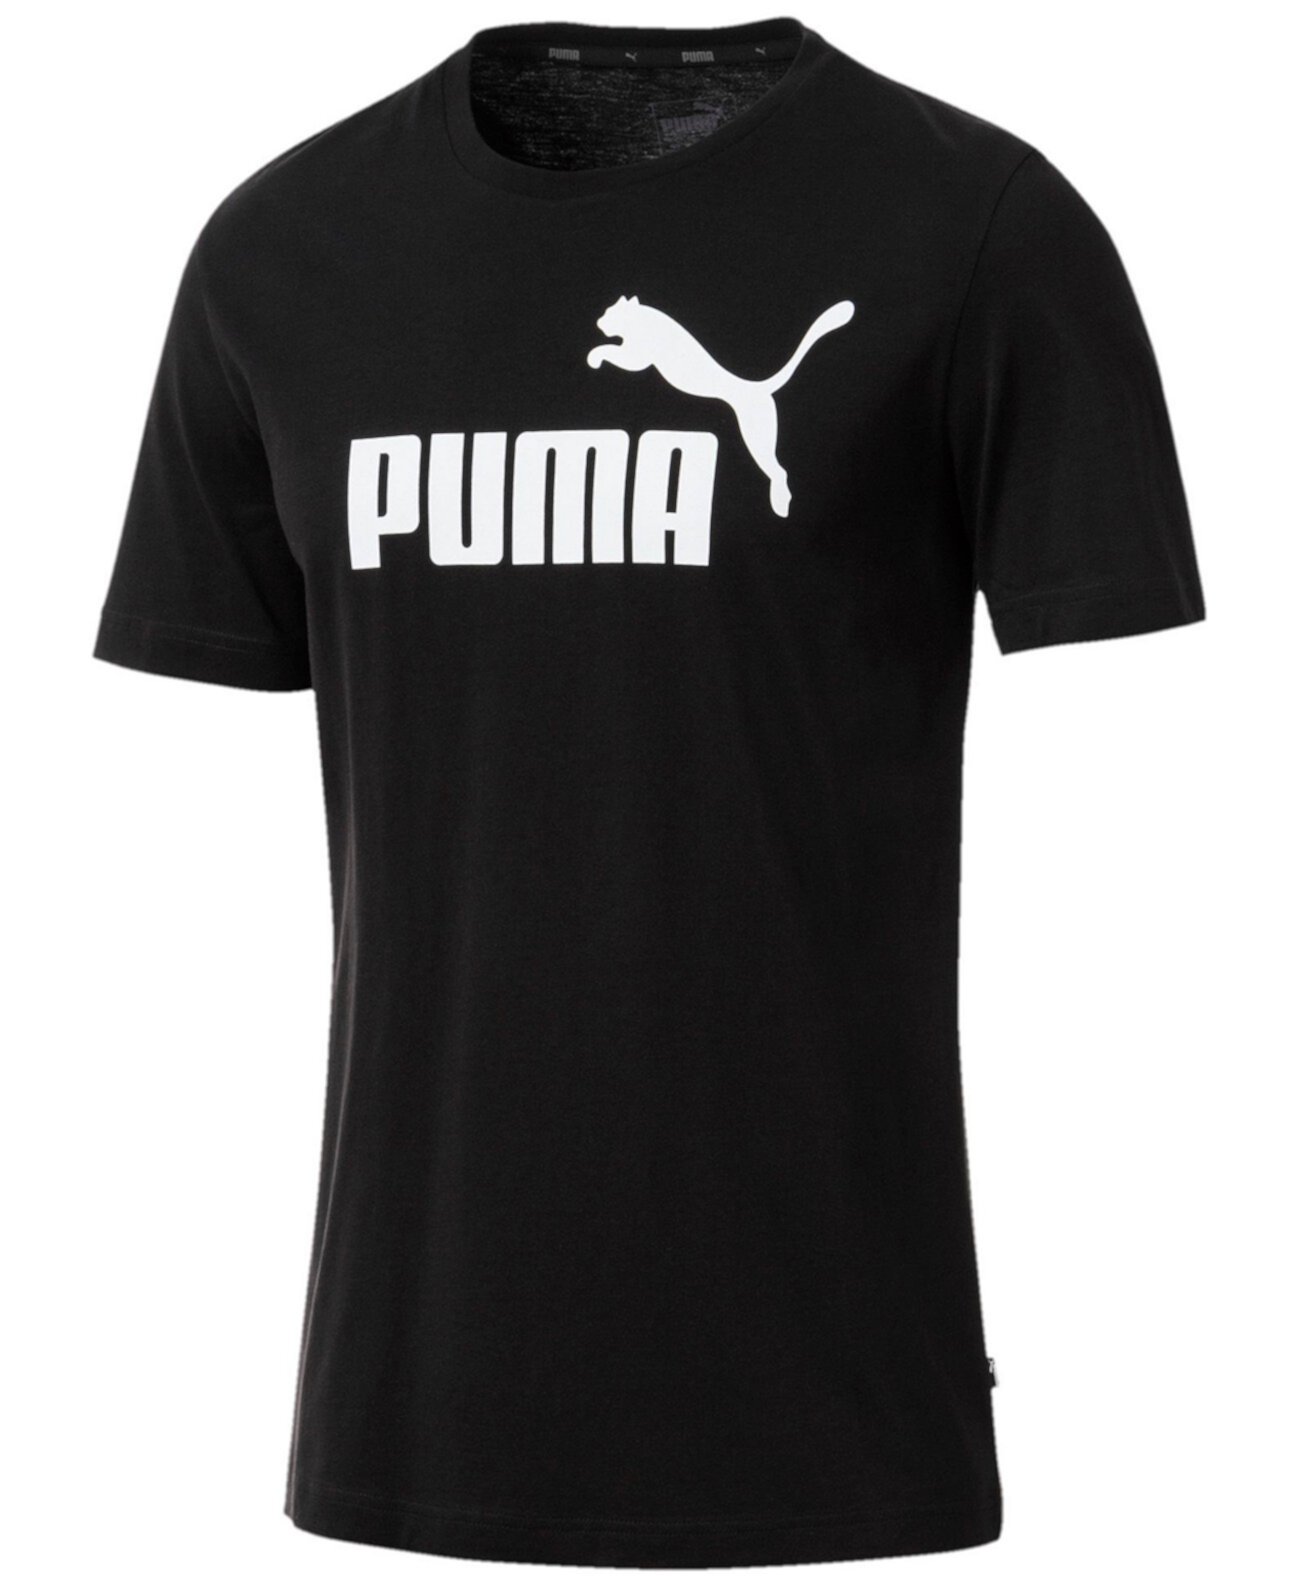 Мужская футболка с логотипом PUMA